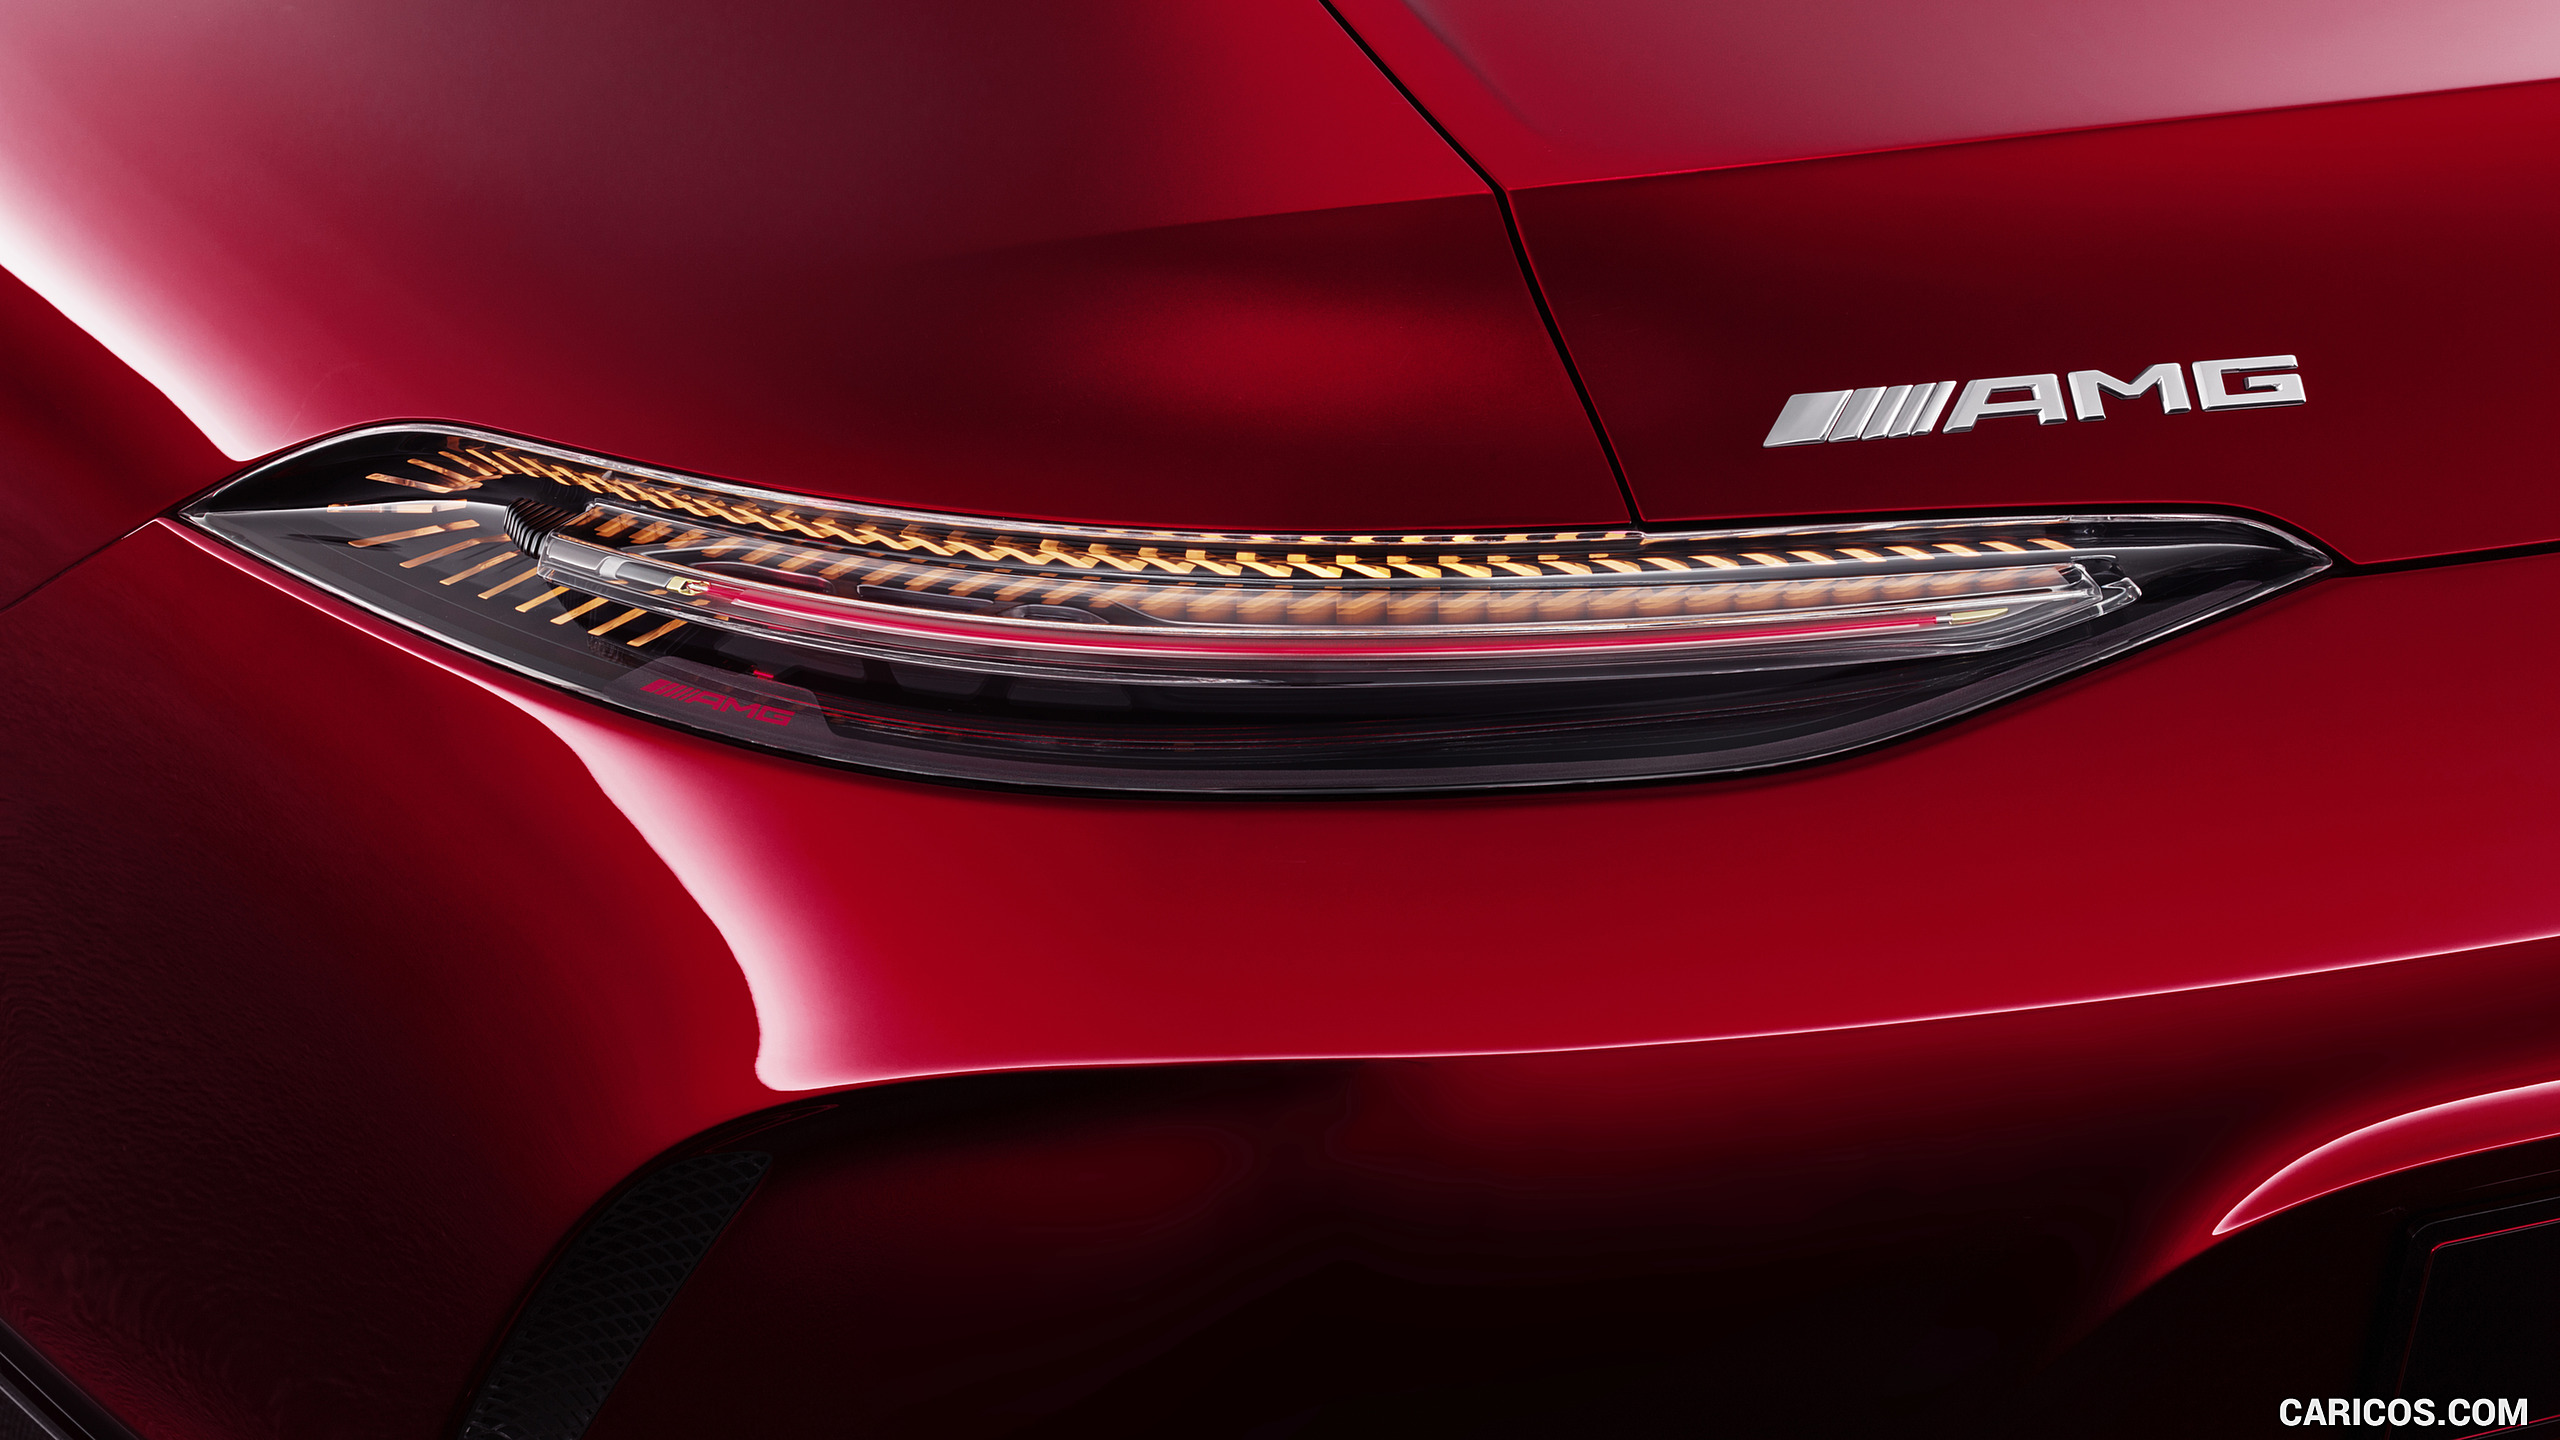 2017 Mercedes-AMG GT 4-Door Concept - Tail Light, #17 of 18